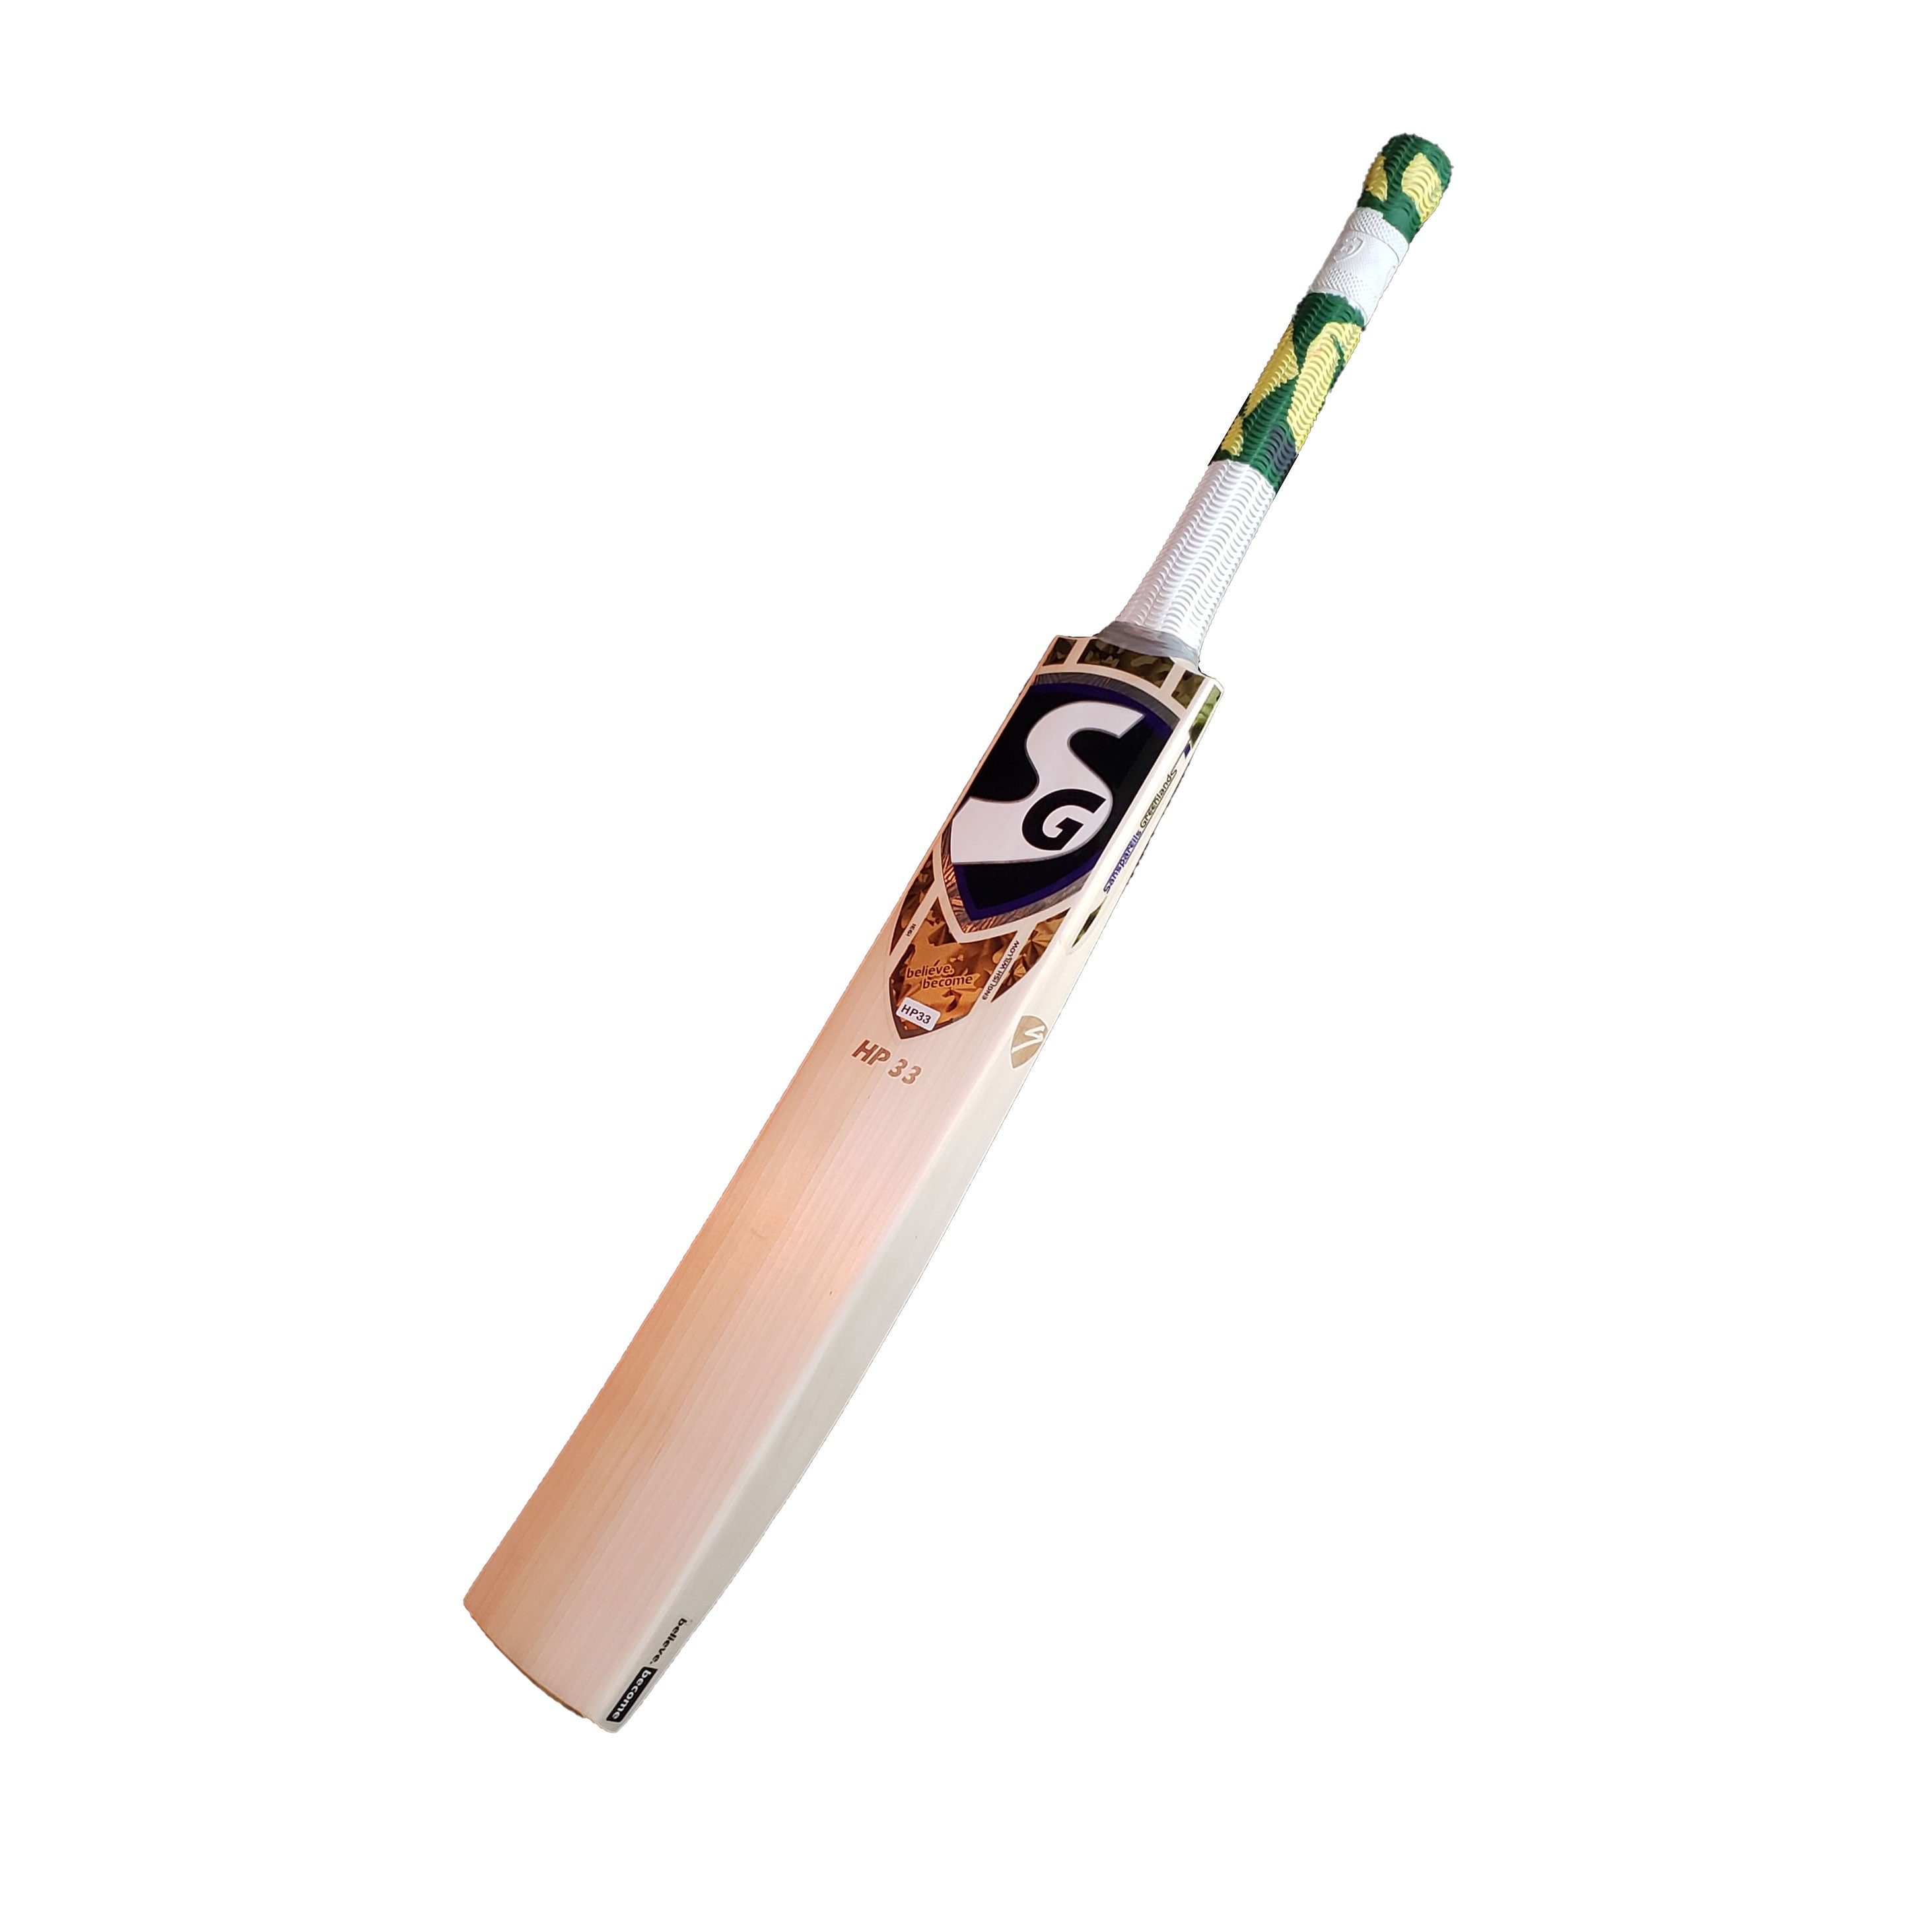 SG HP-33 Hardik Pandya English Willow Cricket Bat Free shipping